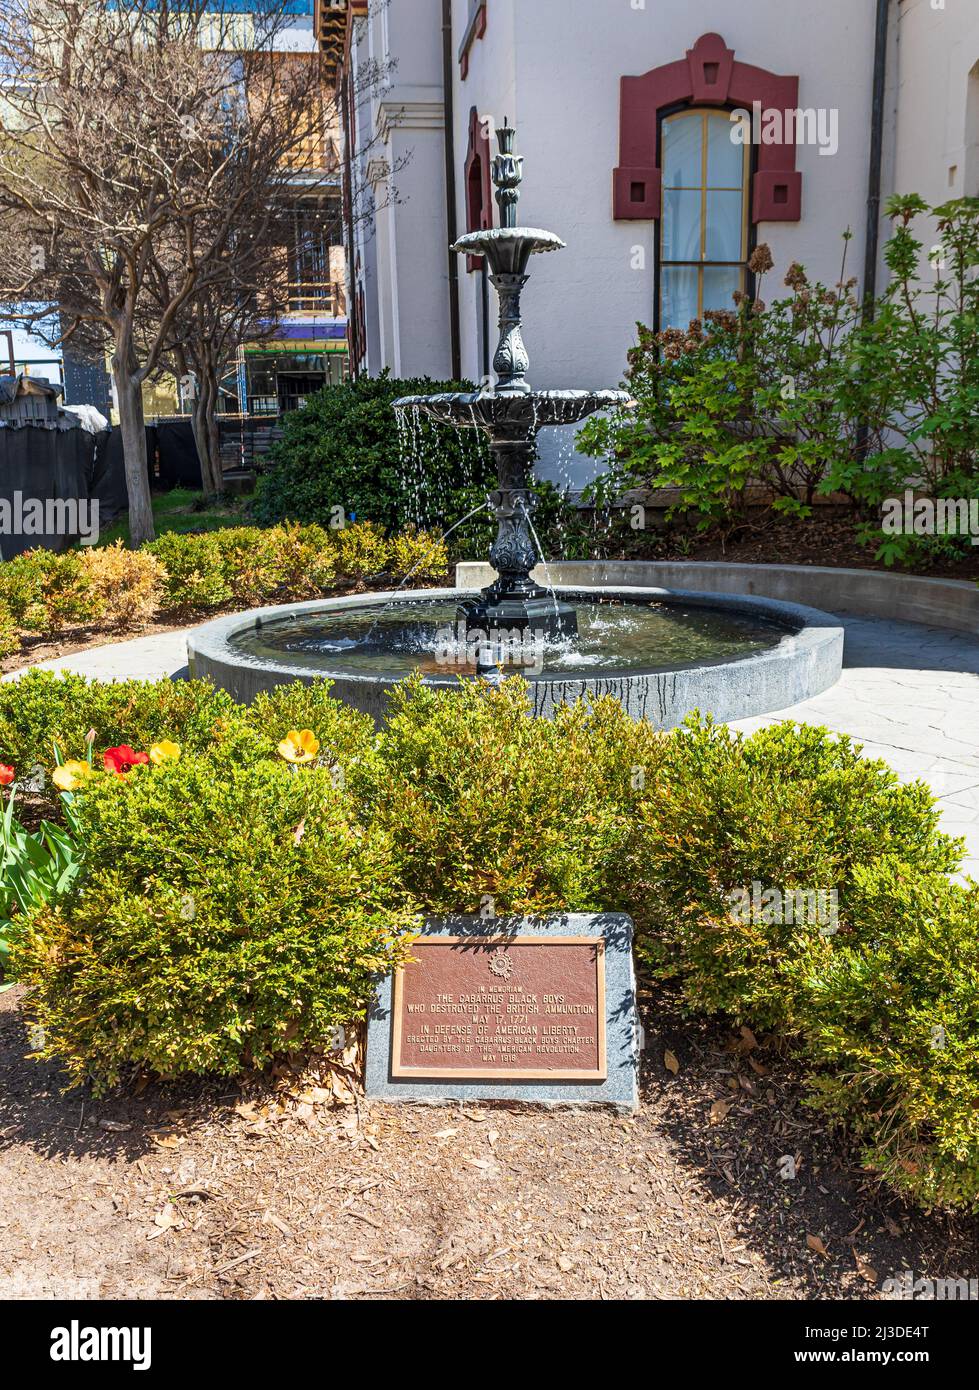 CONCORD, NC, USA-3 APRIL 2022: Gedenkbrunnen, Gärtnerei und Plakat für die 'Cabarrus Black Boys', die am 17. Mai 1771 britische Munitionswaffen zerstörten Stockfoto